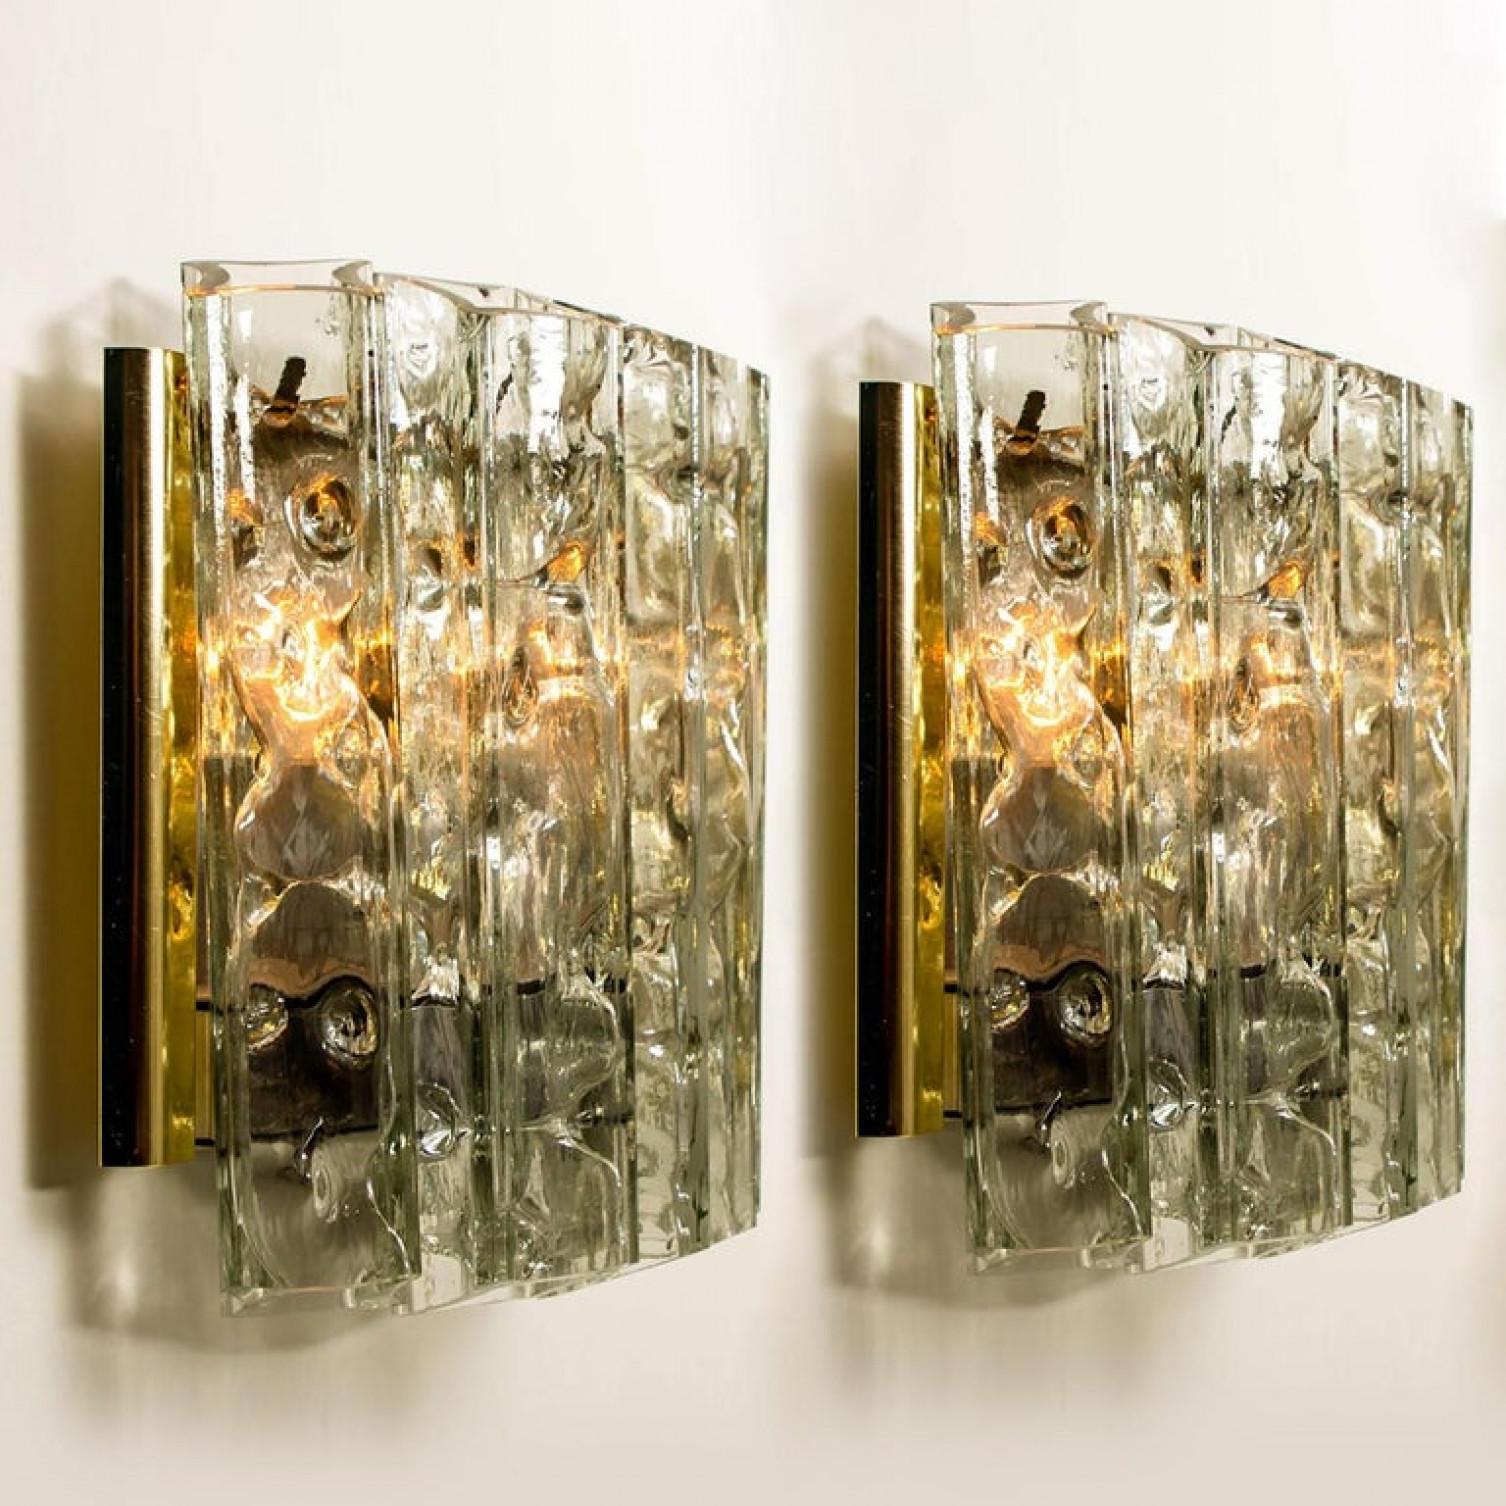 Wunderschönes Paar hochwertiger Wandlampen. Hergestellt in den 1960er Jahren. Die stilvolle Eleganz dieser Leuchte passt zu vielen Umgebungen, vom 20. Jahrhundert bis zum Hollywood Regency, von der dänischen Moderne bis zum Space Age und zur